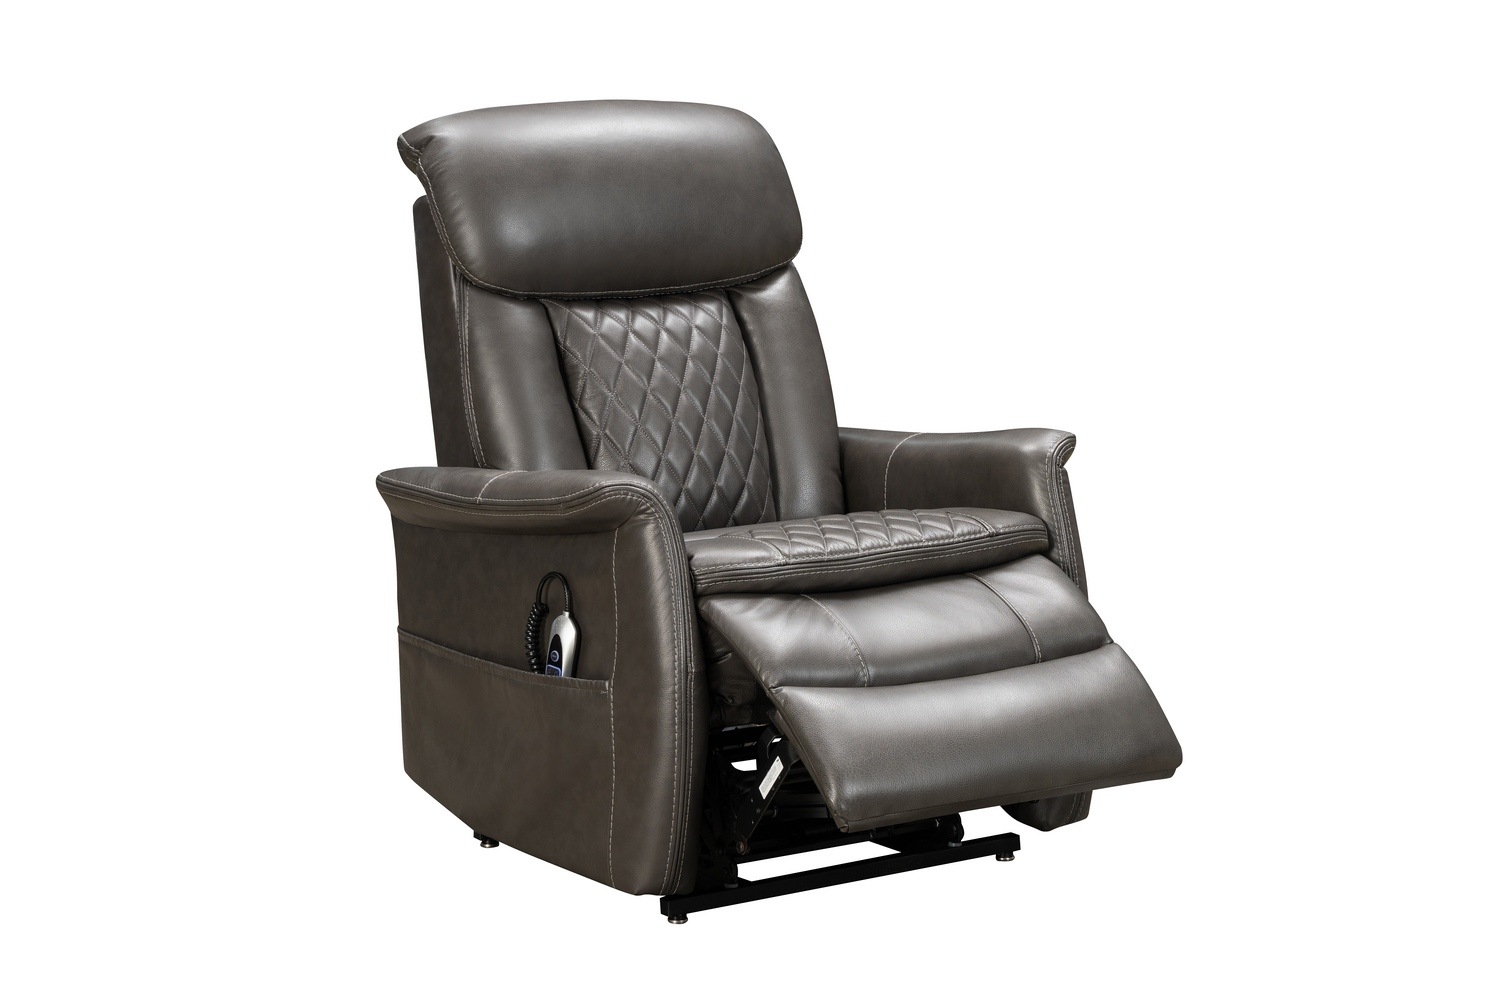 Barcalounger Lauren Lift Chair Recliner Chair with Power Head Rest, Power Lumbar and Lay Flat Mechanism - Matteo Smokey Gray/Leather Match